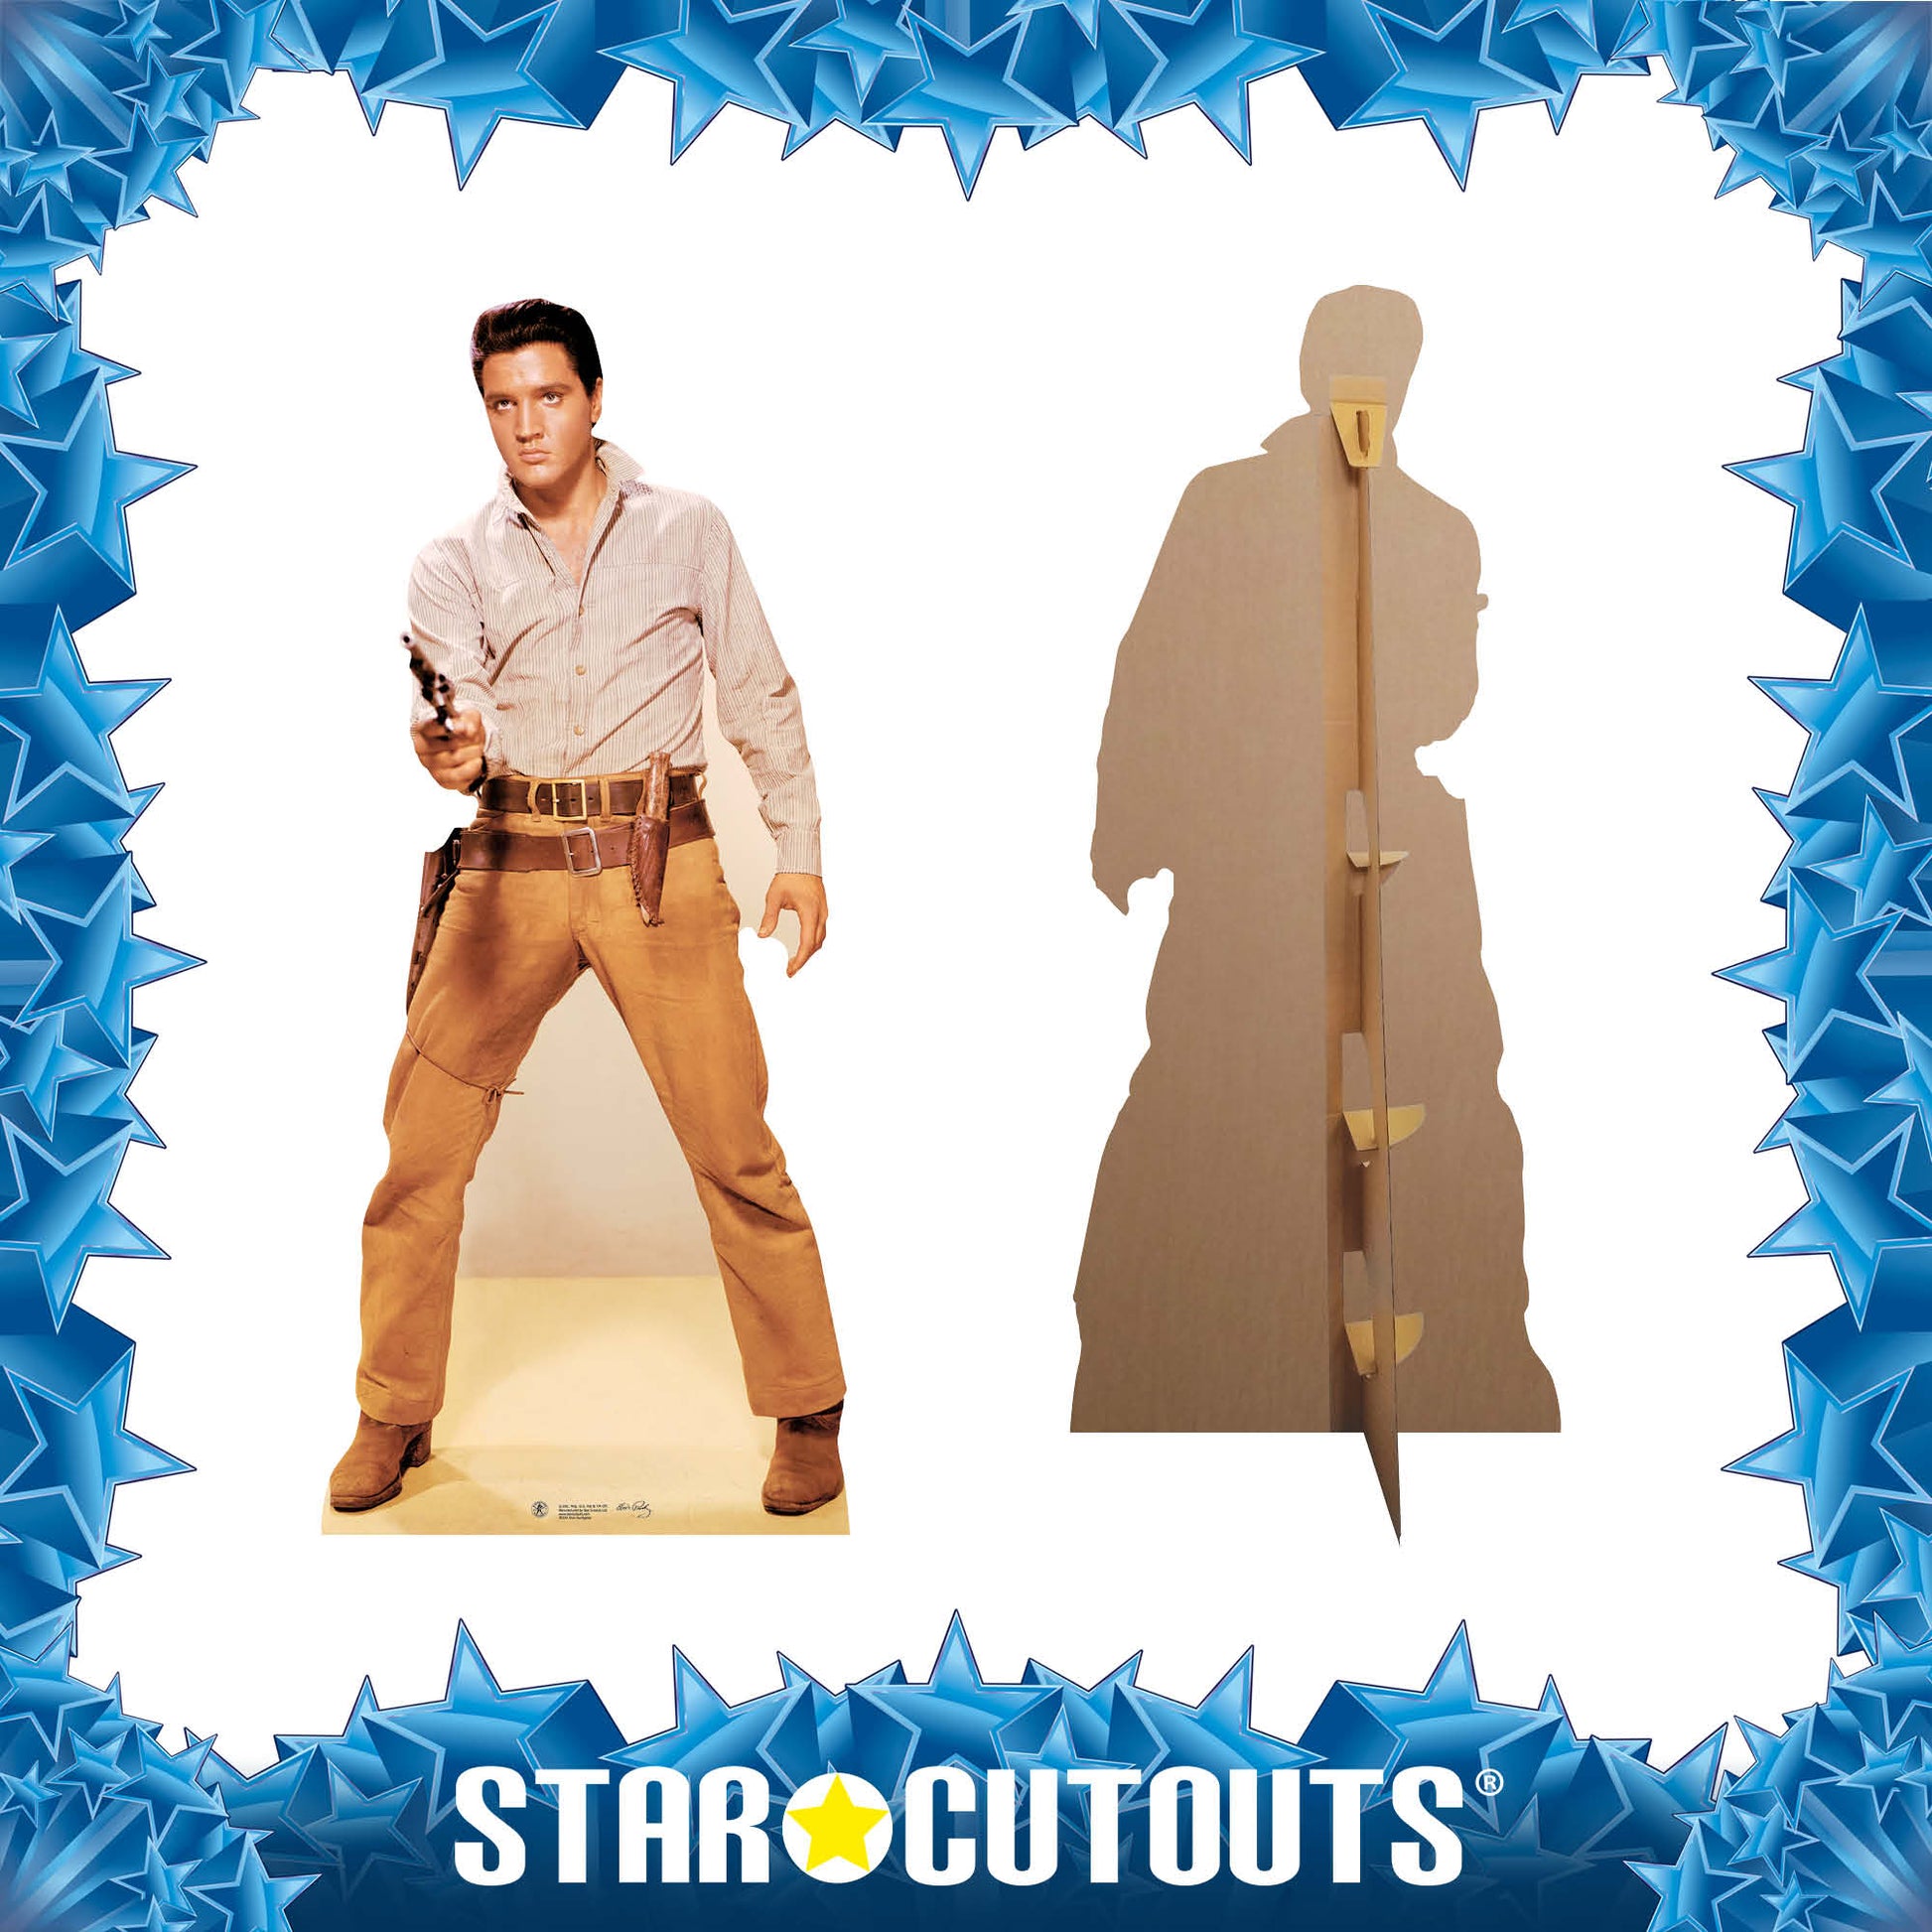 Elvis Gunfight Cowboy Cardboard Cutout MyCardboardCutout